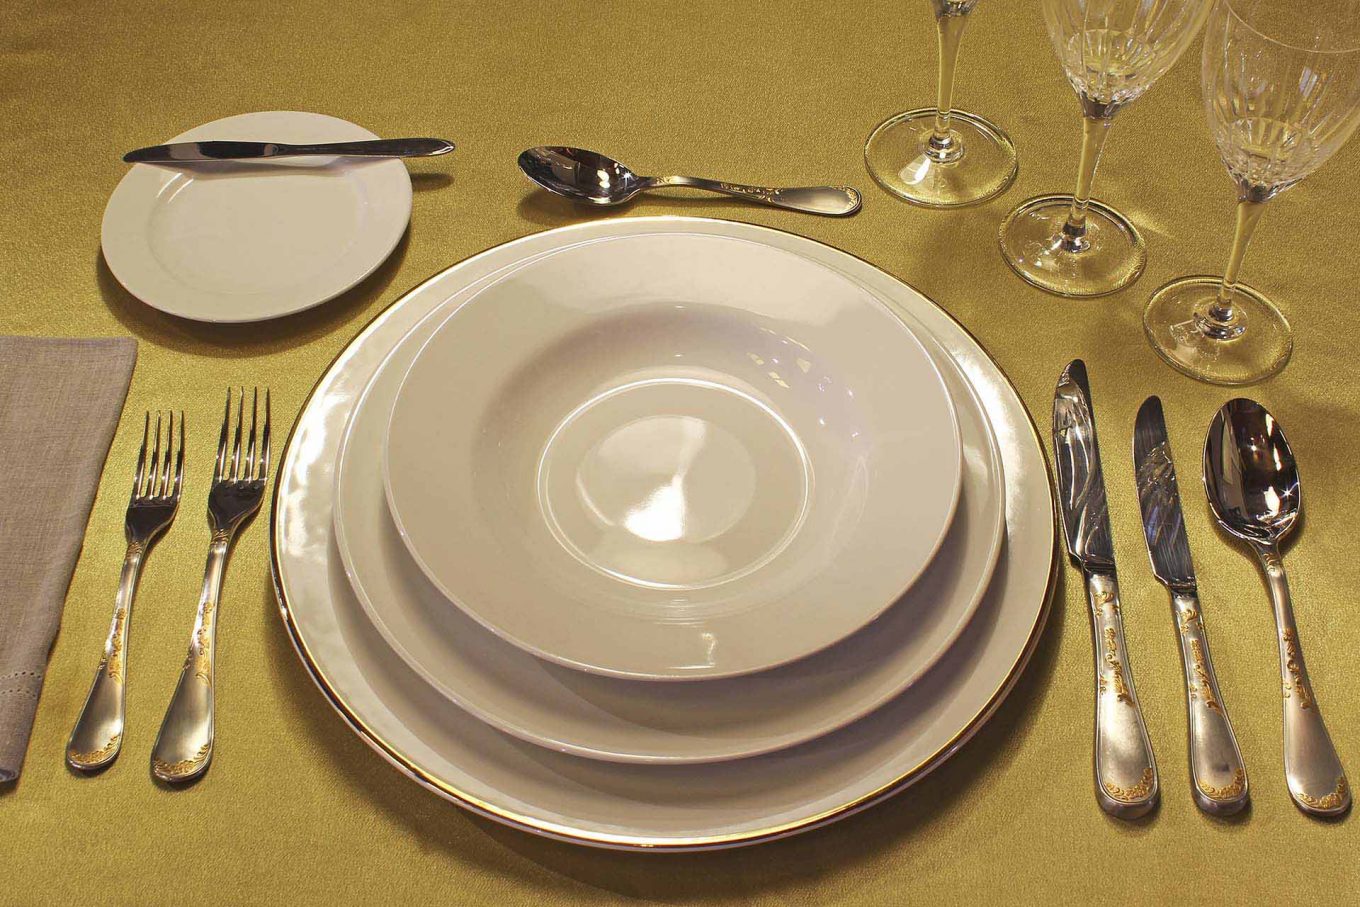 Imagem: O sousplat branco com filete dourado fica muito bem com os pratos brancos Flamingo White da Oxford Porcelanas.